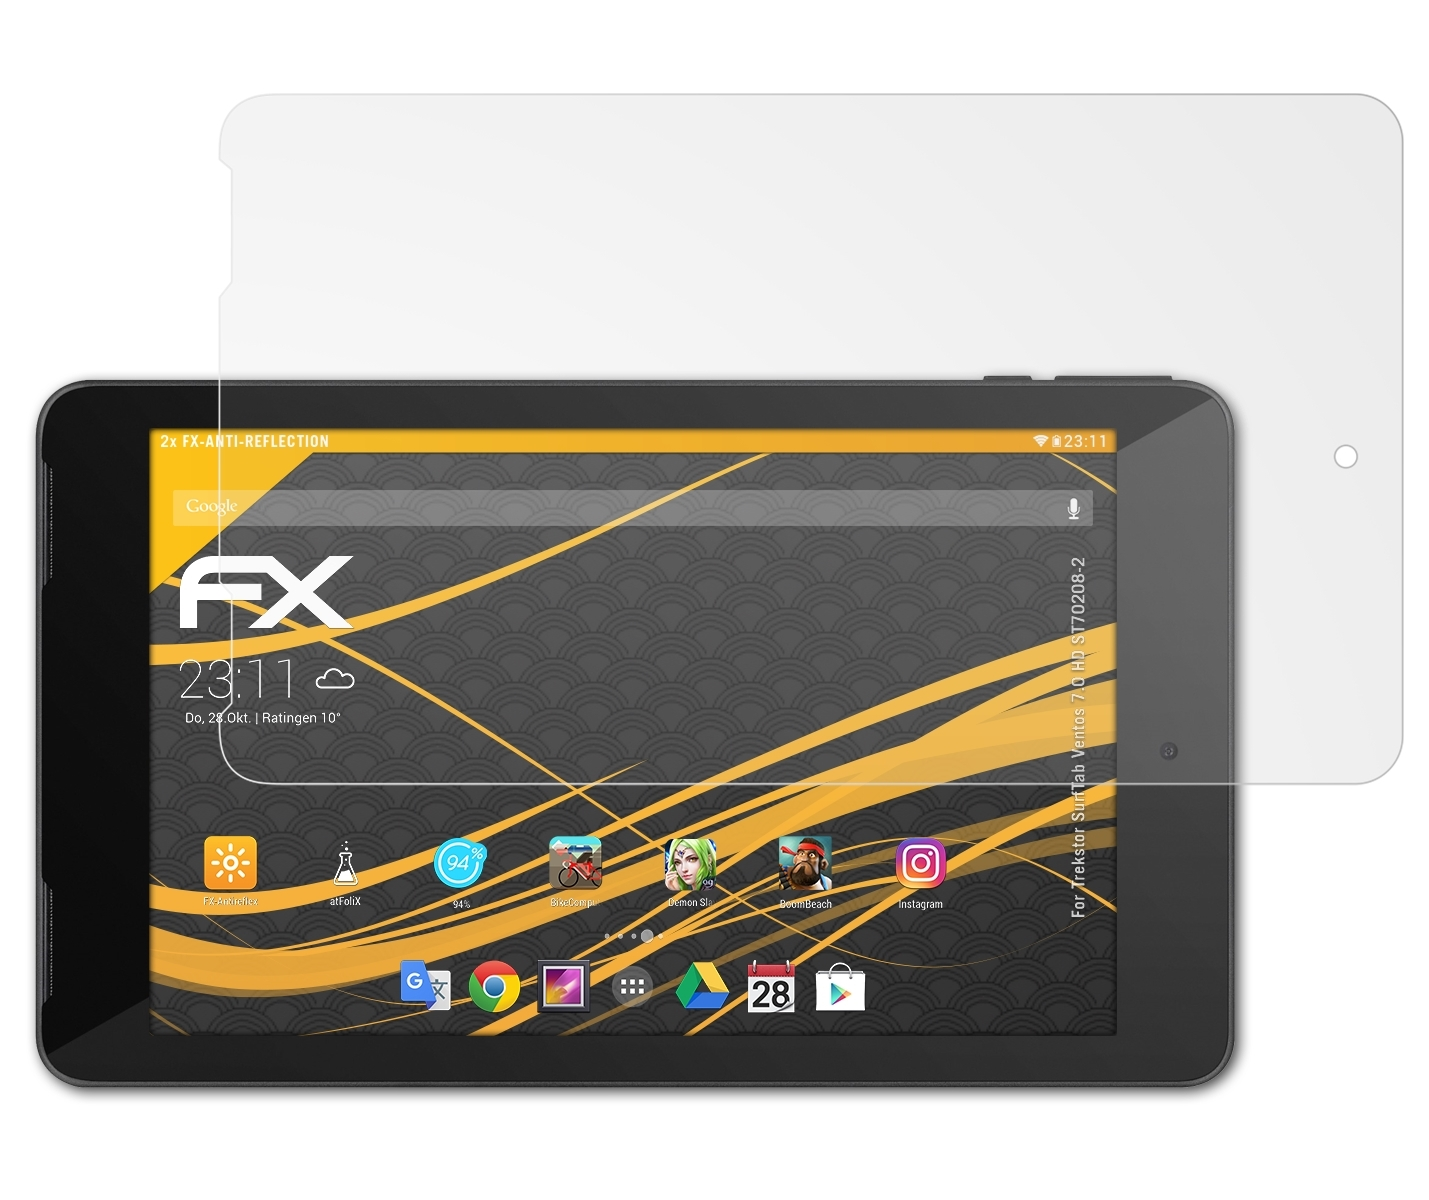 ATFOLIX 2x FX-Antireflex Displayschutz(für Trekstor SurfTab Ventos HD (ST70208-2)) 7.0